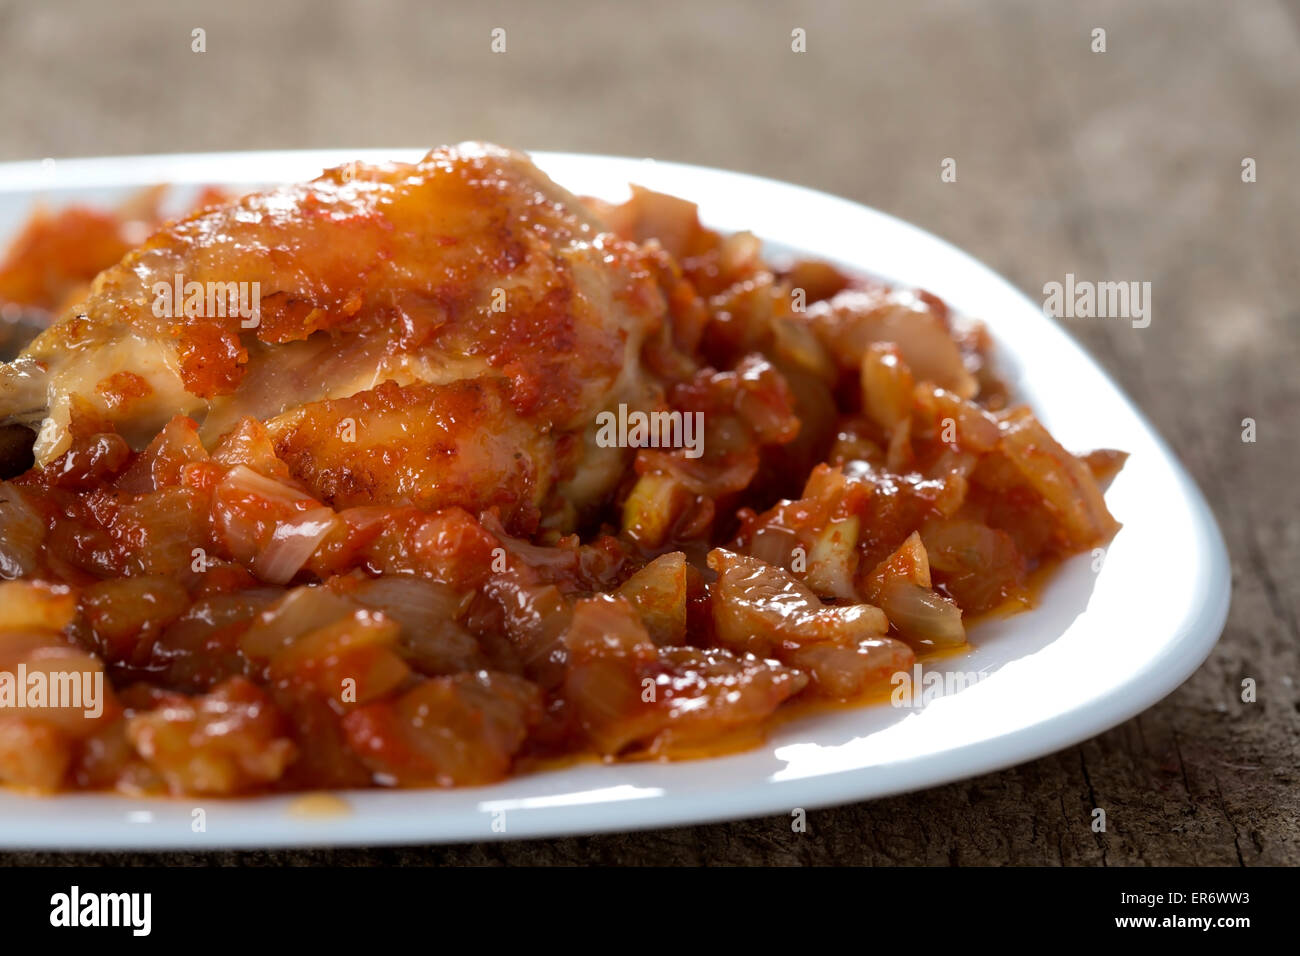 Ragoût de poulet avec sauce à l'oignon en plaque blanche sur table en bois Banque D'Images